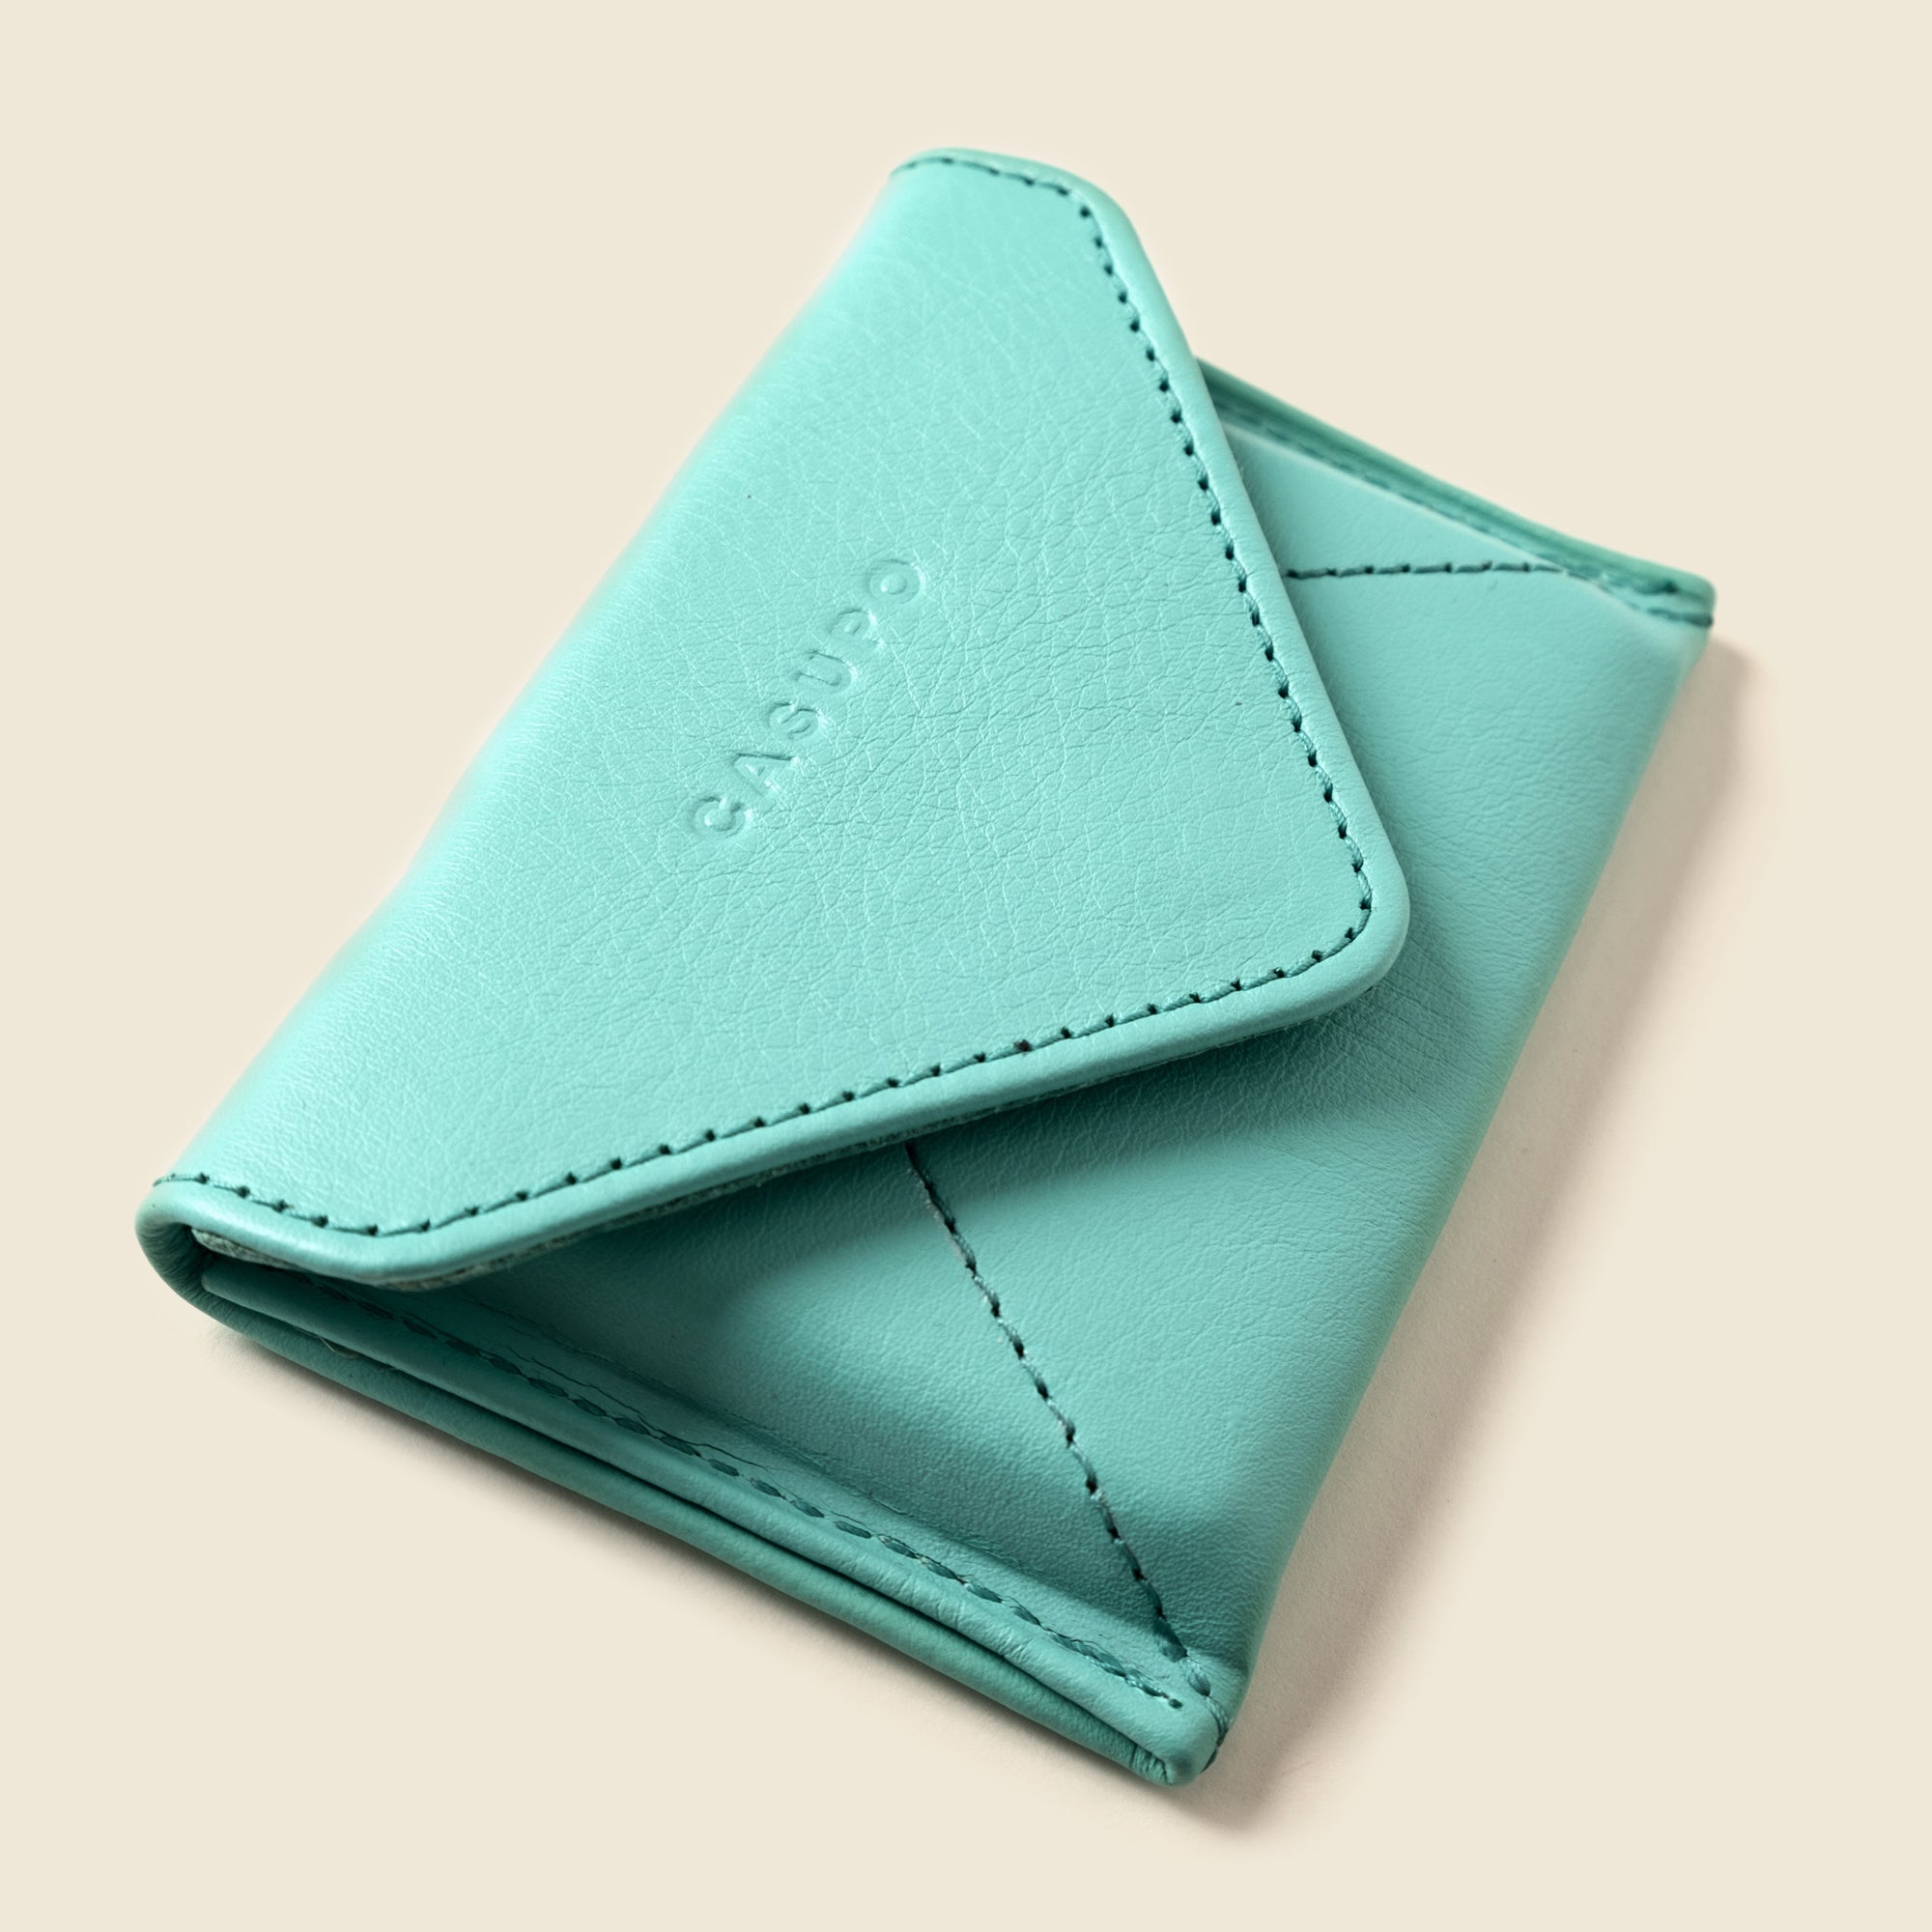 light blue leather envelope wallet